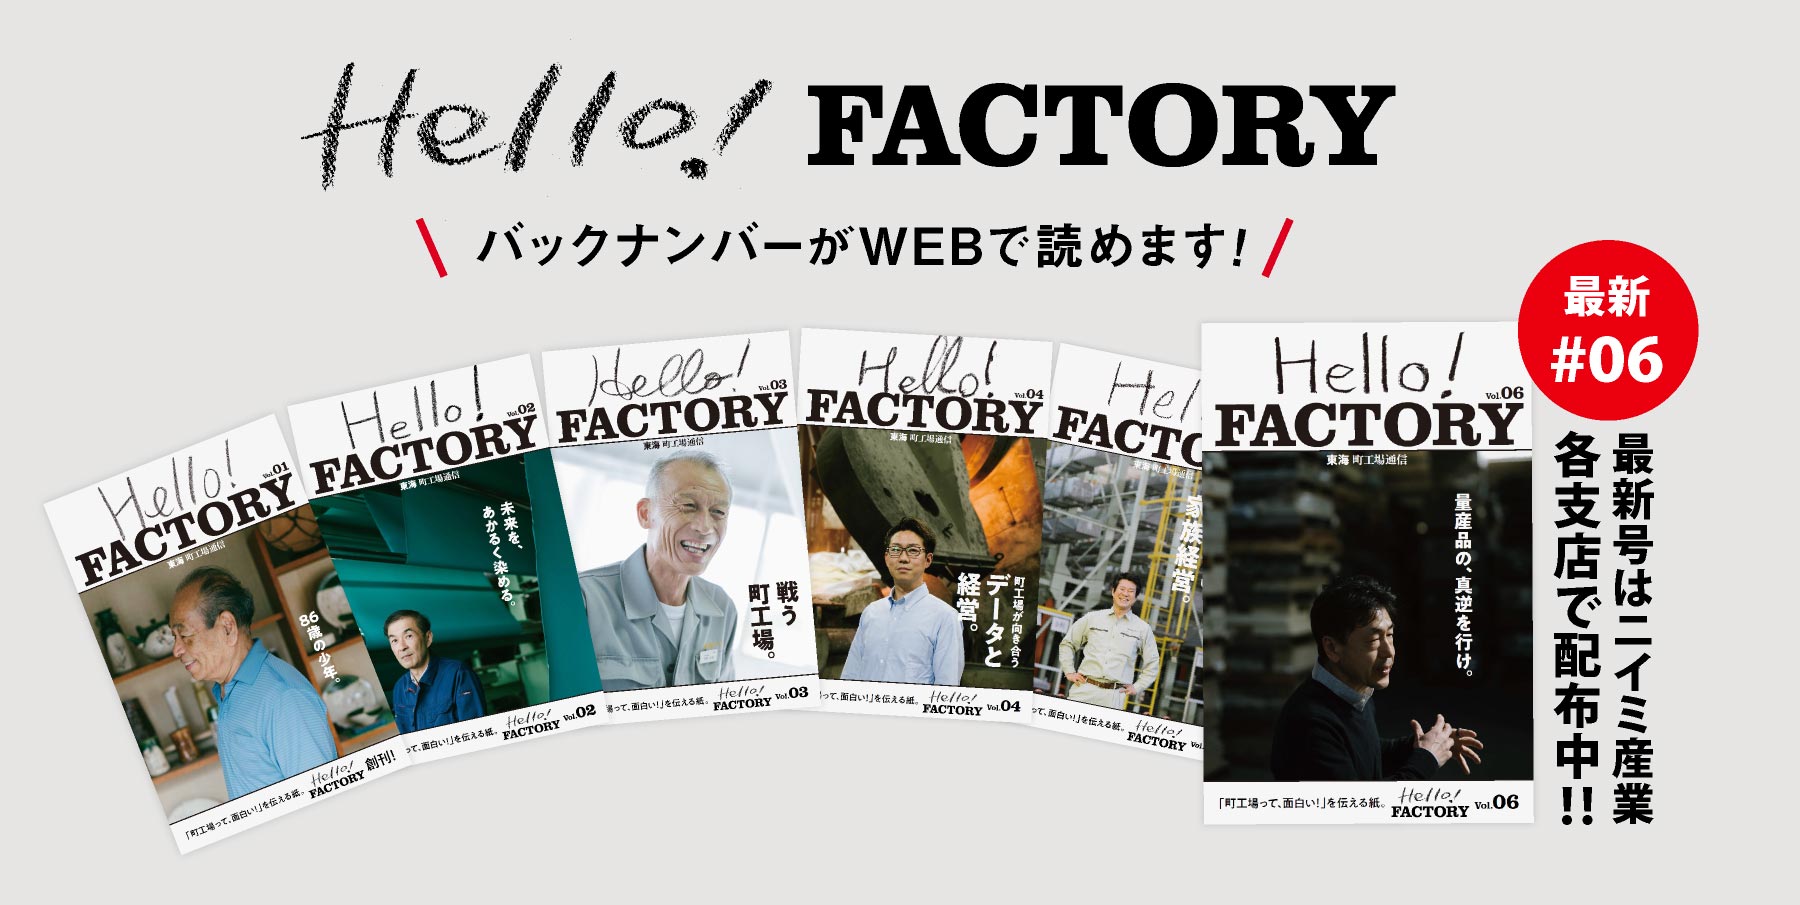 Hello! FACTORY 東海地方の町工場の面白さを伝える紙メディア バックナンバー一覧